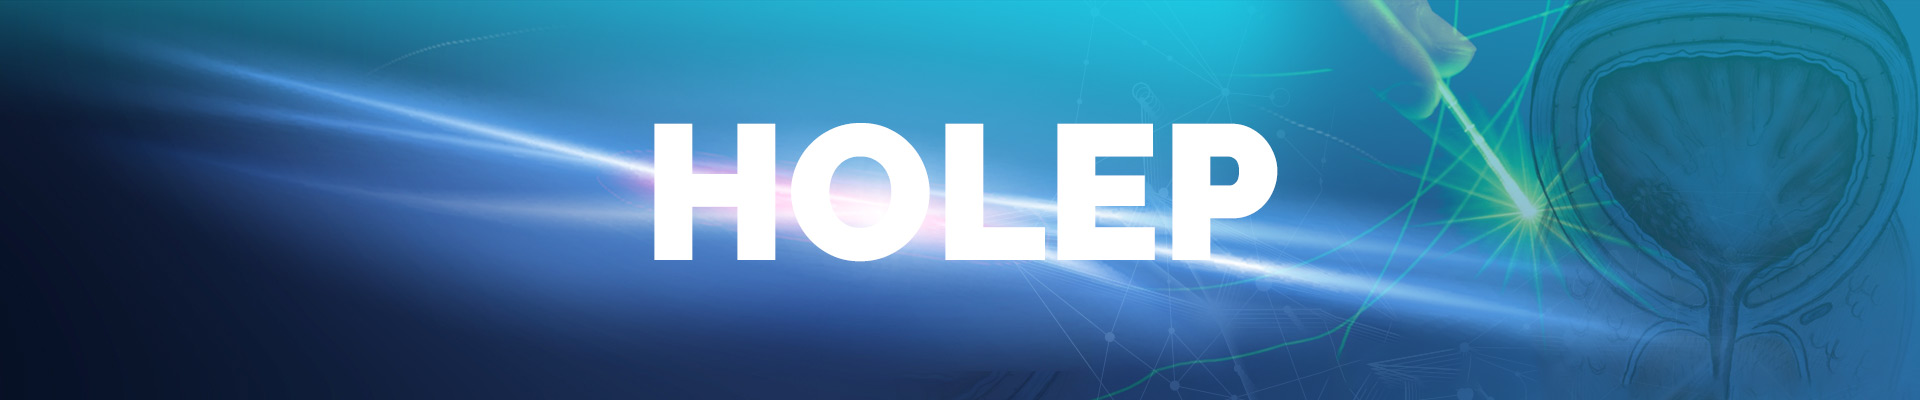 HOLEP (Holmium Lazer Enükleasyonu) görseli: Modern bir prostat cerrahi yöntemi olan Holep, prostat büyümesinin tedavisinde etkili bir lazer teknolojisini kullanır. Hasta dostu ve minimal invaziv bir işlem olan Holep, prostat semptomlarını hafifletmek için güvenilir bir seçenektir.